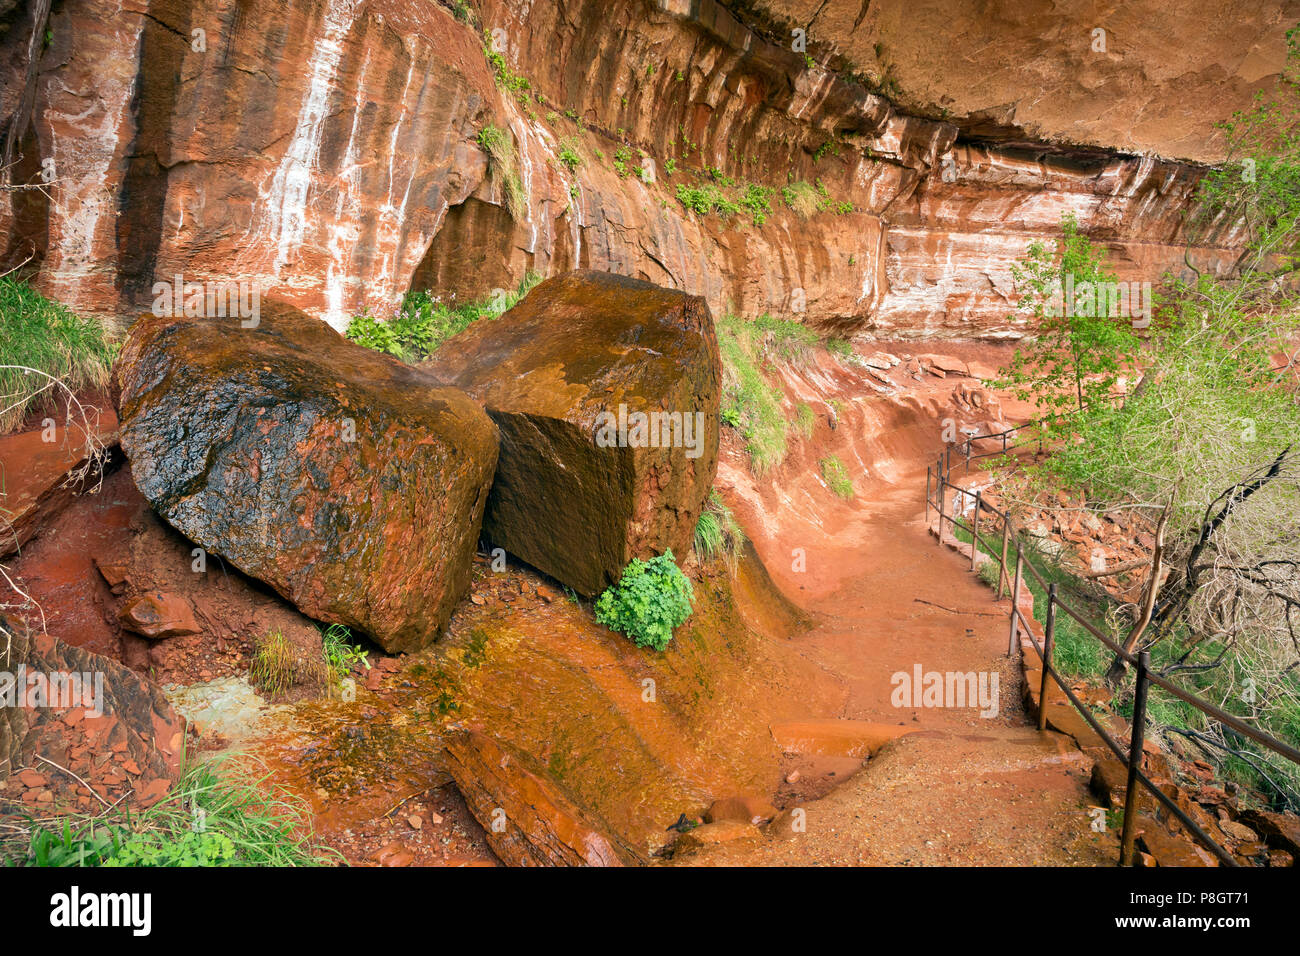 UTAH - Rinnsal von Wasser fallen aus einem Riss in den Felsen über entlang der Strecke unter einem Überhang der unteren, mittleren und oberen Emerald Pools zu verbinden. Stockfoto